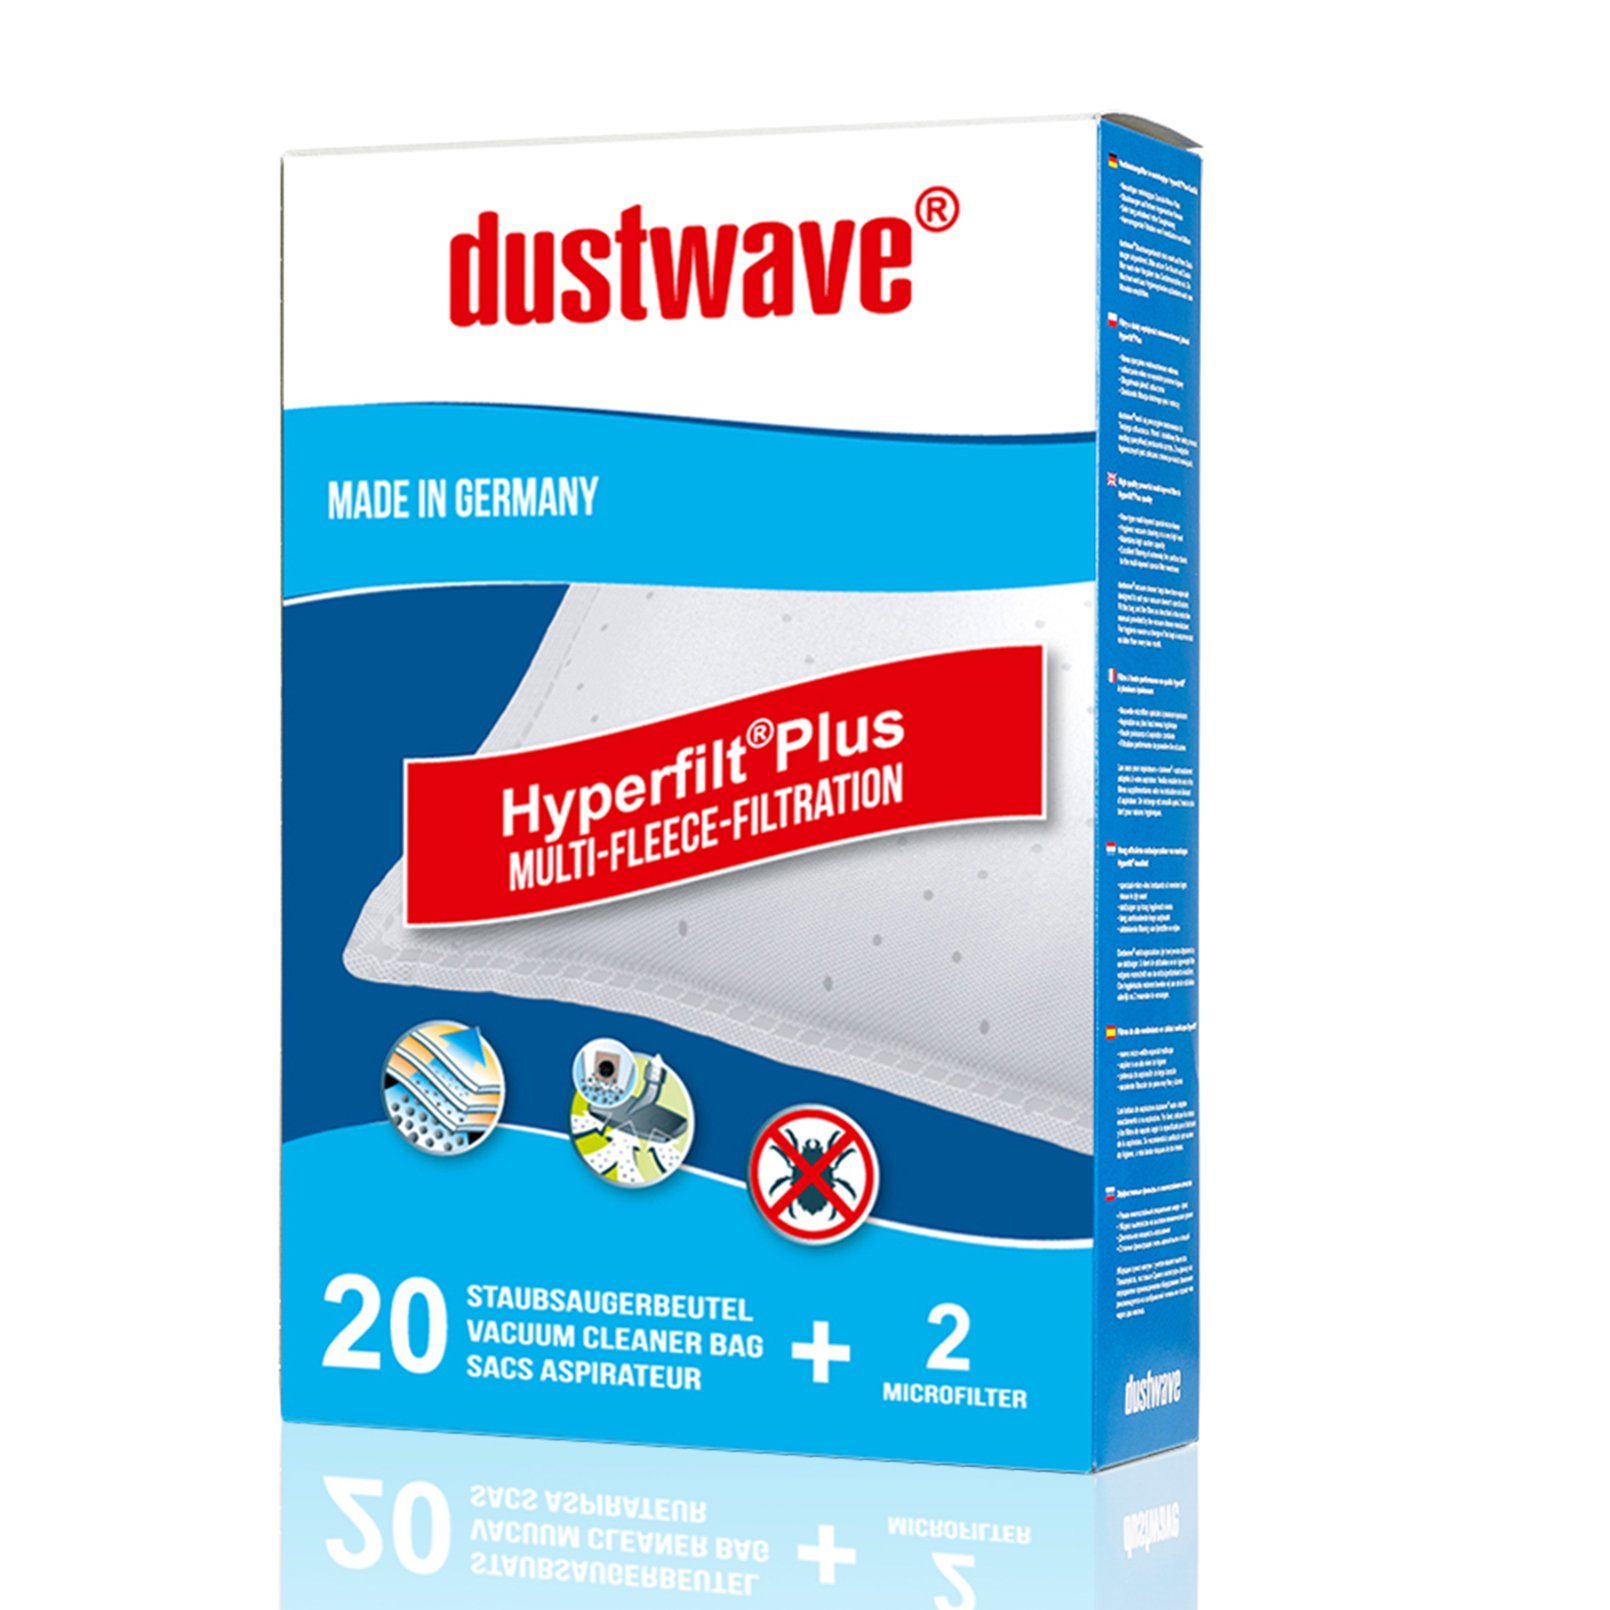 Dustwave Staubsaugerbeutel Megapack, passend für Baur 340.755 / 340-755, 20 St., Megapack, 20 Staubsaugerbeutel + 2 Hepa-Filter (ca. 15x15cm - zuschneidbar)